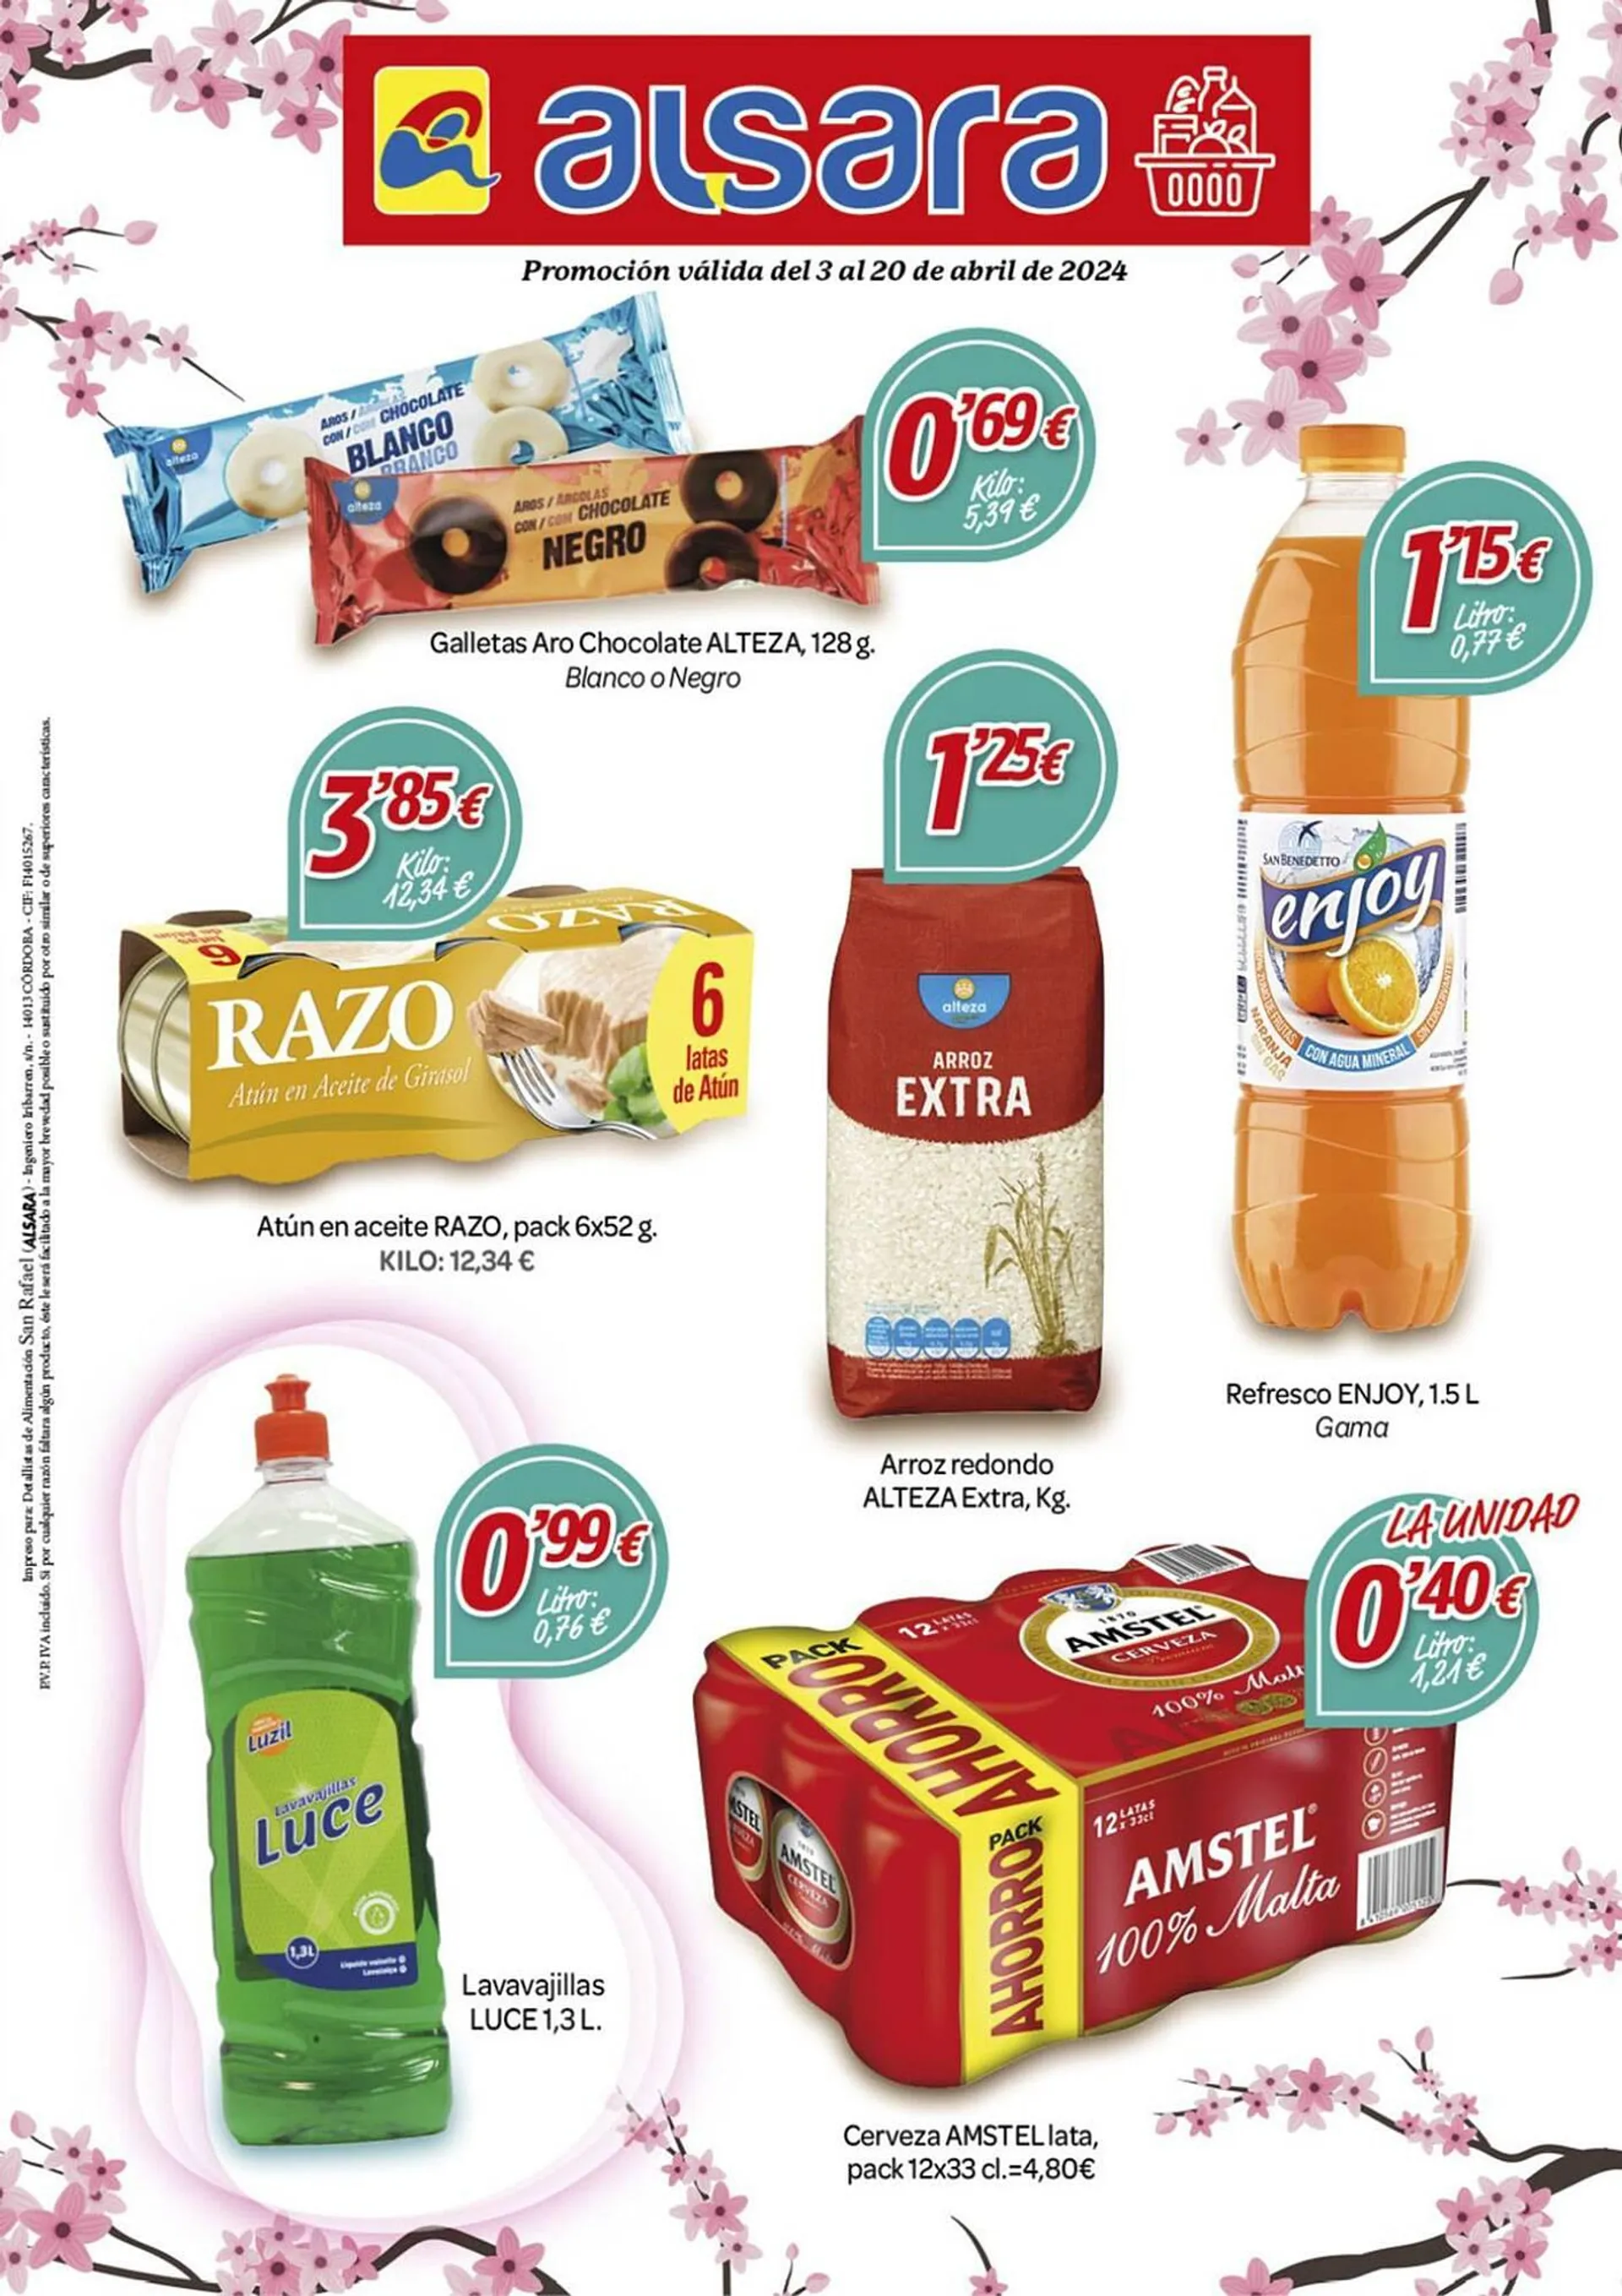 Catálogo de Folleto Alsara Supermercados 3 de abril al 20 de abril 2024 - Página 1